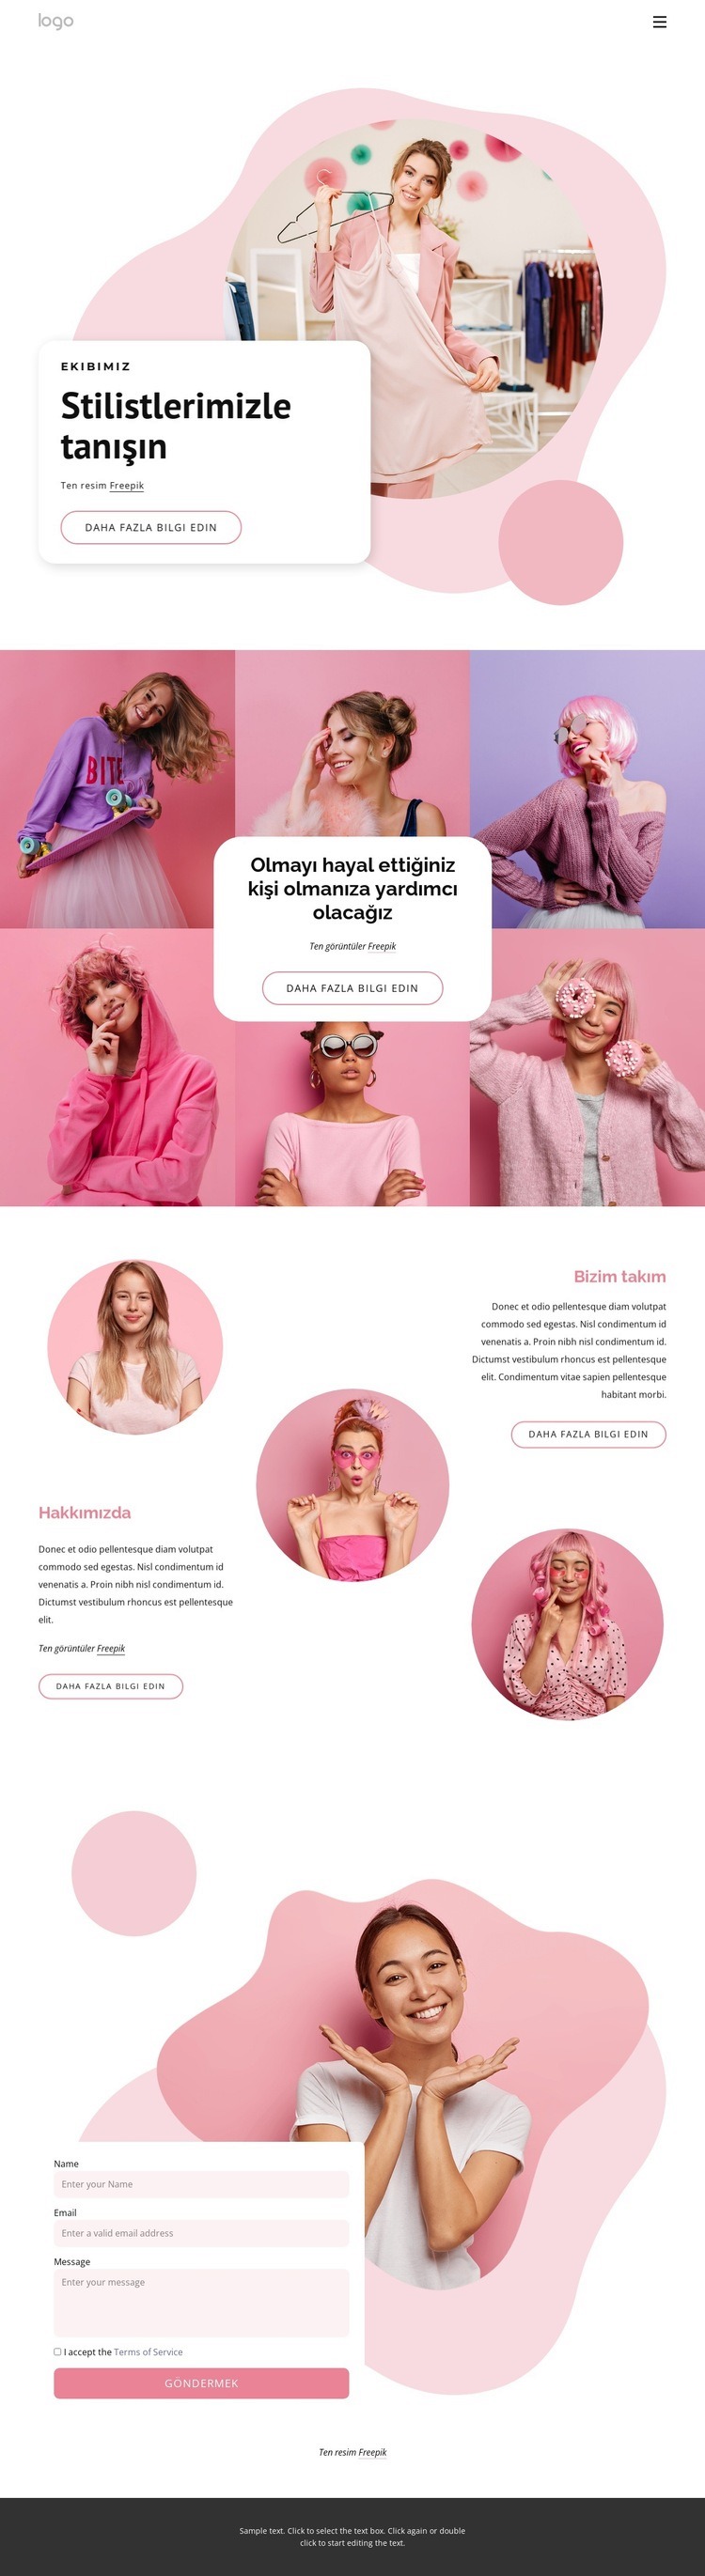 Stilistlerimizle tanışın Web Sitesi Mockup'ı